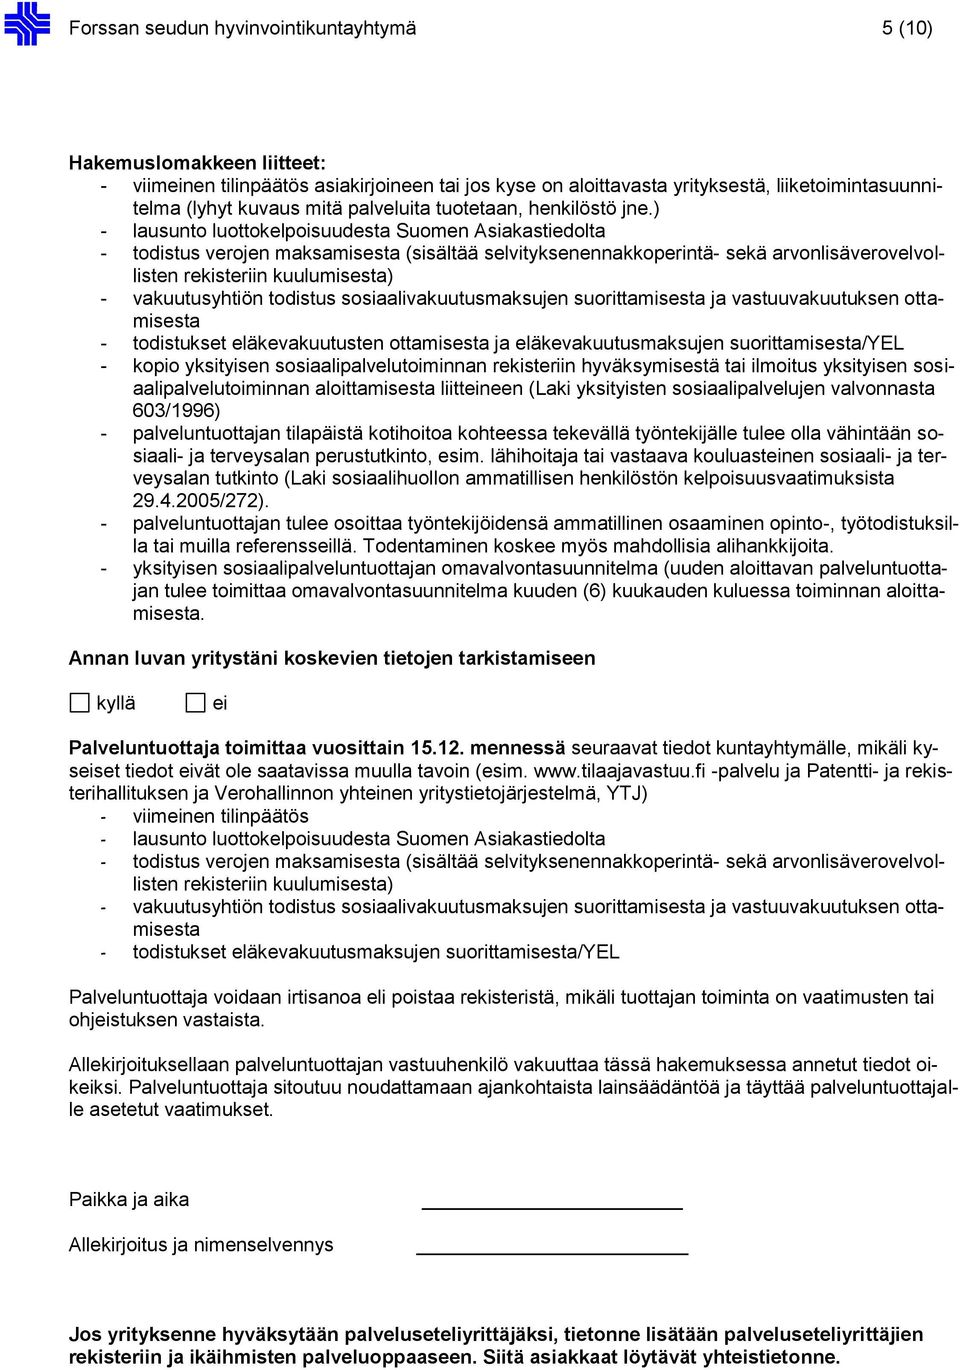 ) - lausunto luottokelpoisuudesta Suomen Asiakastiedolta - todistus verojen maksamisesta (sisältää selvityksenennakkoperintä- sekä arvonlisäverovelvollisten rekisteriin kuulumisesta) - vakuutusyhtiön